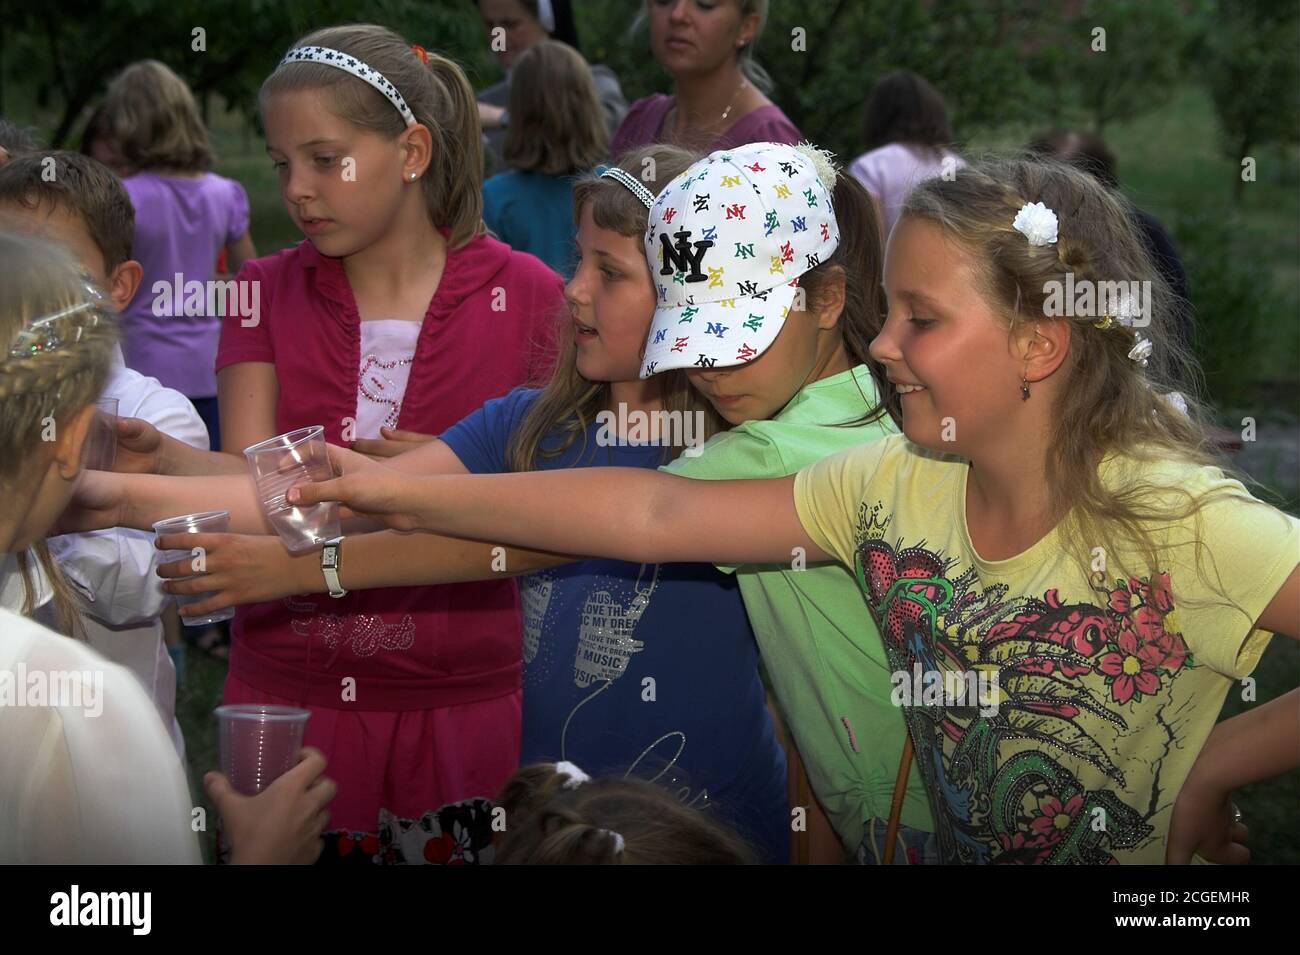 Polonia Niños en un picnic sosteniendo sus manos con tazas para una bebida. Kinder bei einem Picknick halten ihre Hände mit Tassen für einen Drink aus. Foto de stock